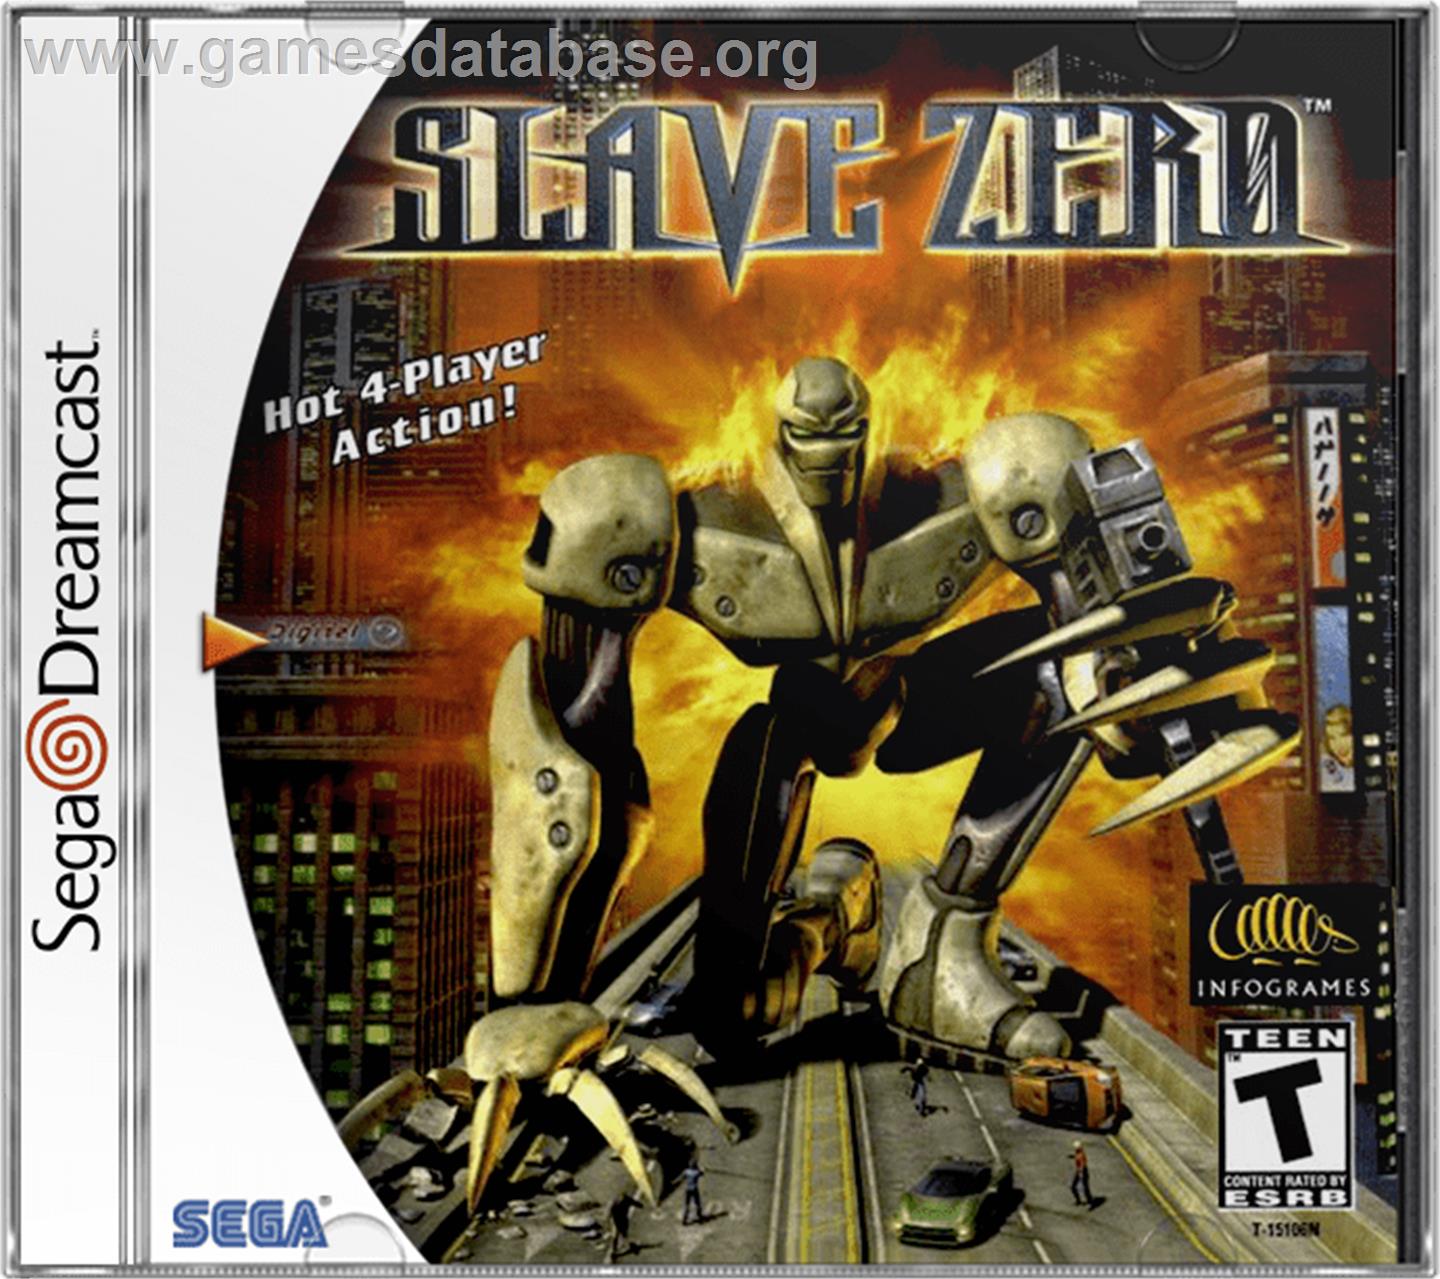 Slave Zero - Sega Dreamcast - Artwork - Box